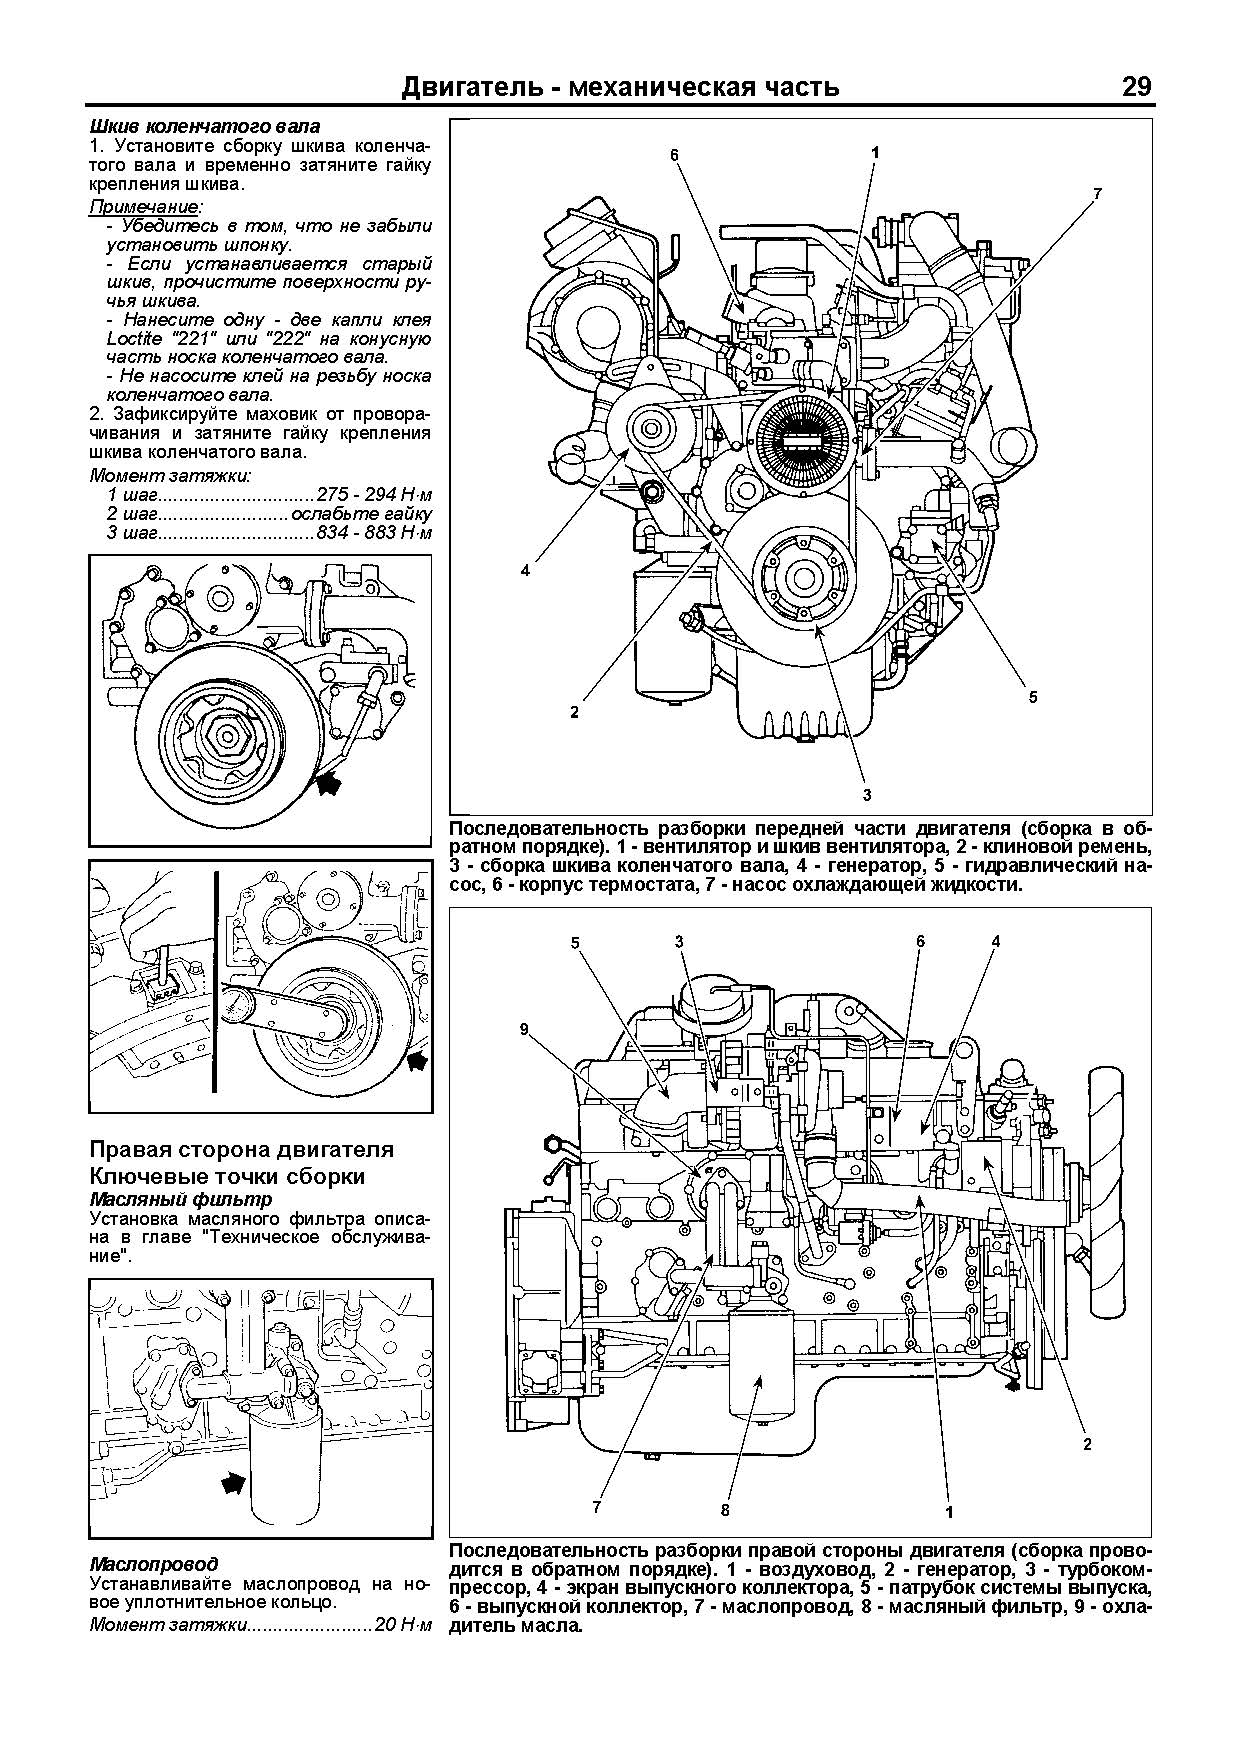 Книга: Nissan Diesel двигатели FE6, FE6A, FE6B, FE6C, FE6E, FE6T, FE6TA, FE6TB рем., то | Легион-Aвтодата